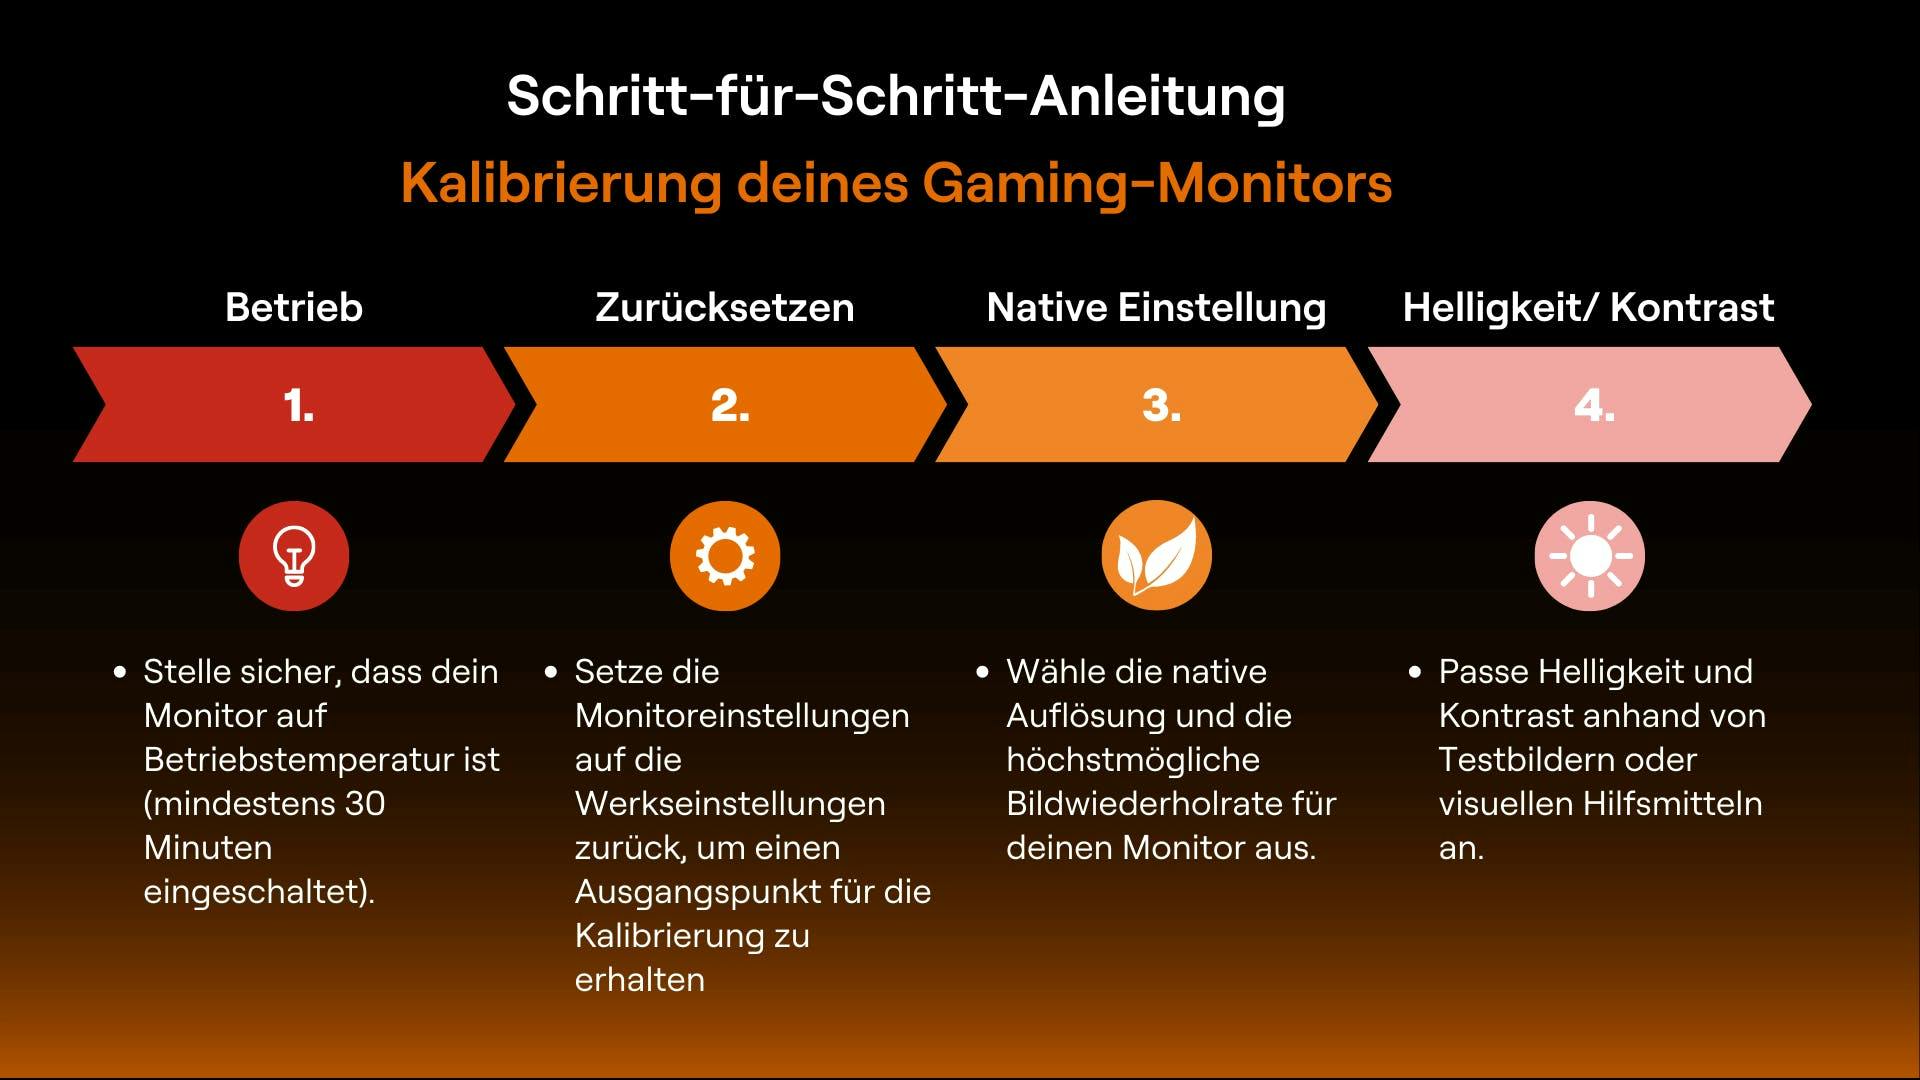 Der erste Teil einer Anleitung zur Kalibrierung eines Gaming-Monitors. Die Schritte sind Betrieb, Zurücksetzen, Native Einstellungen und Helligkeit sowie Kontrast.